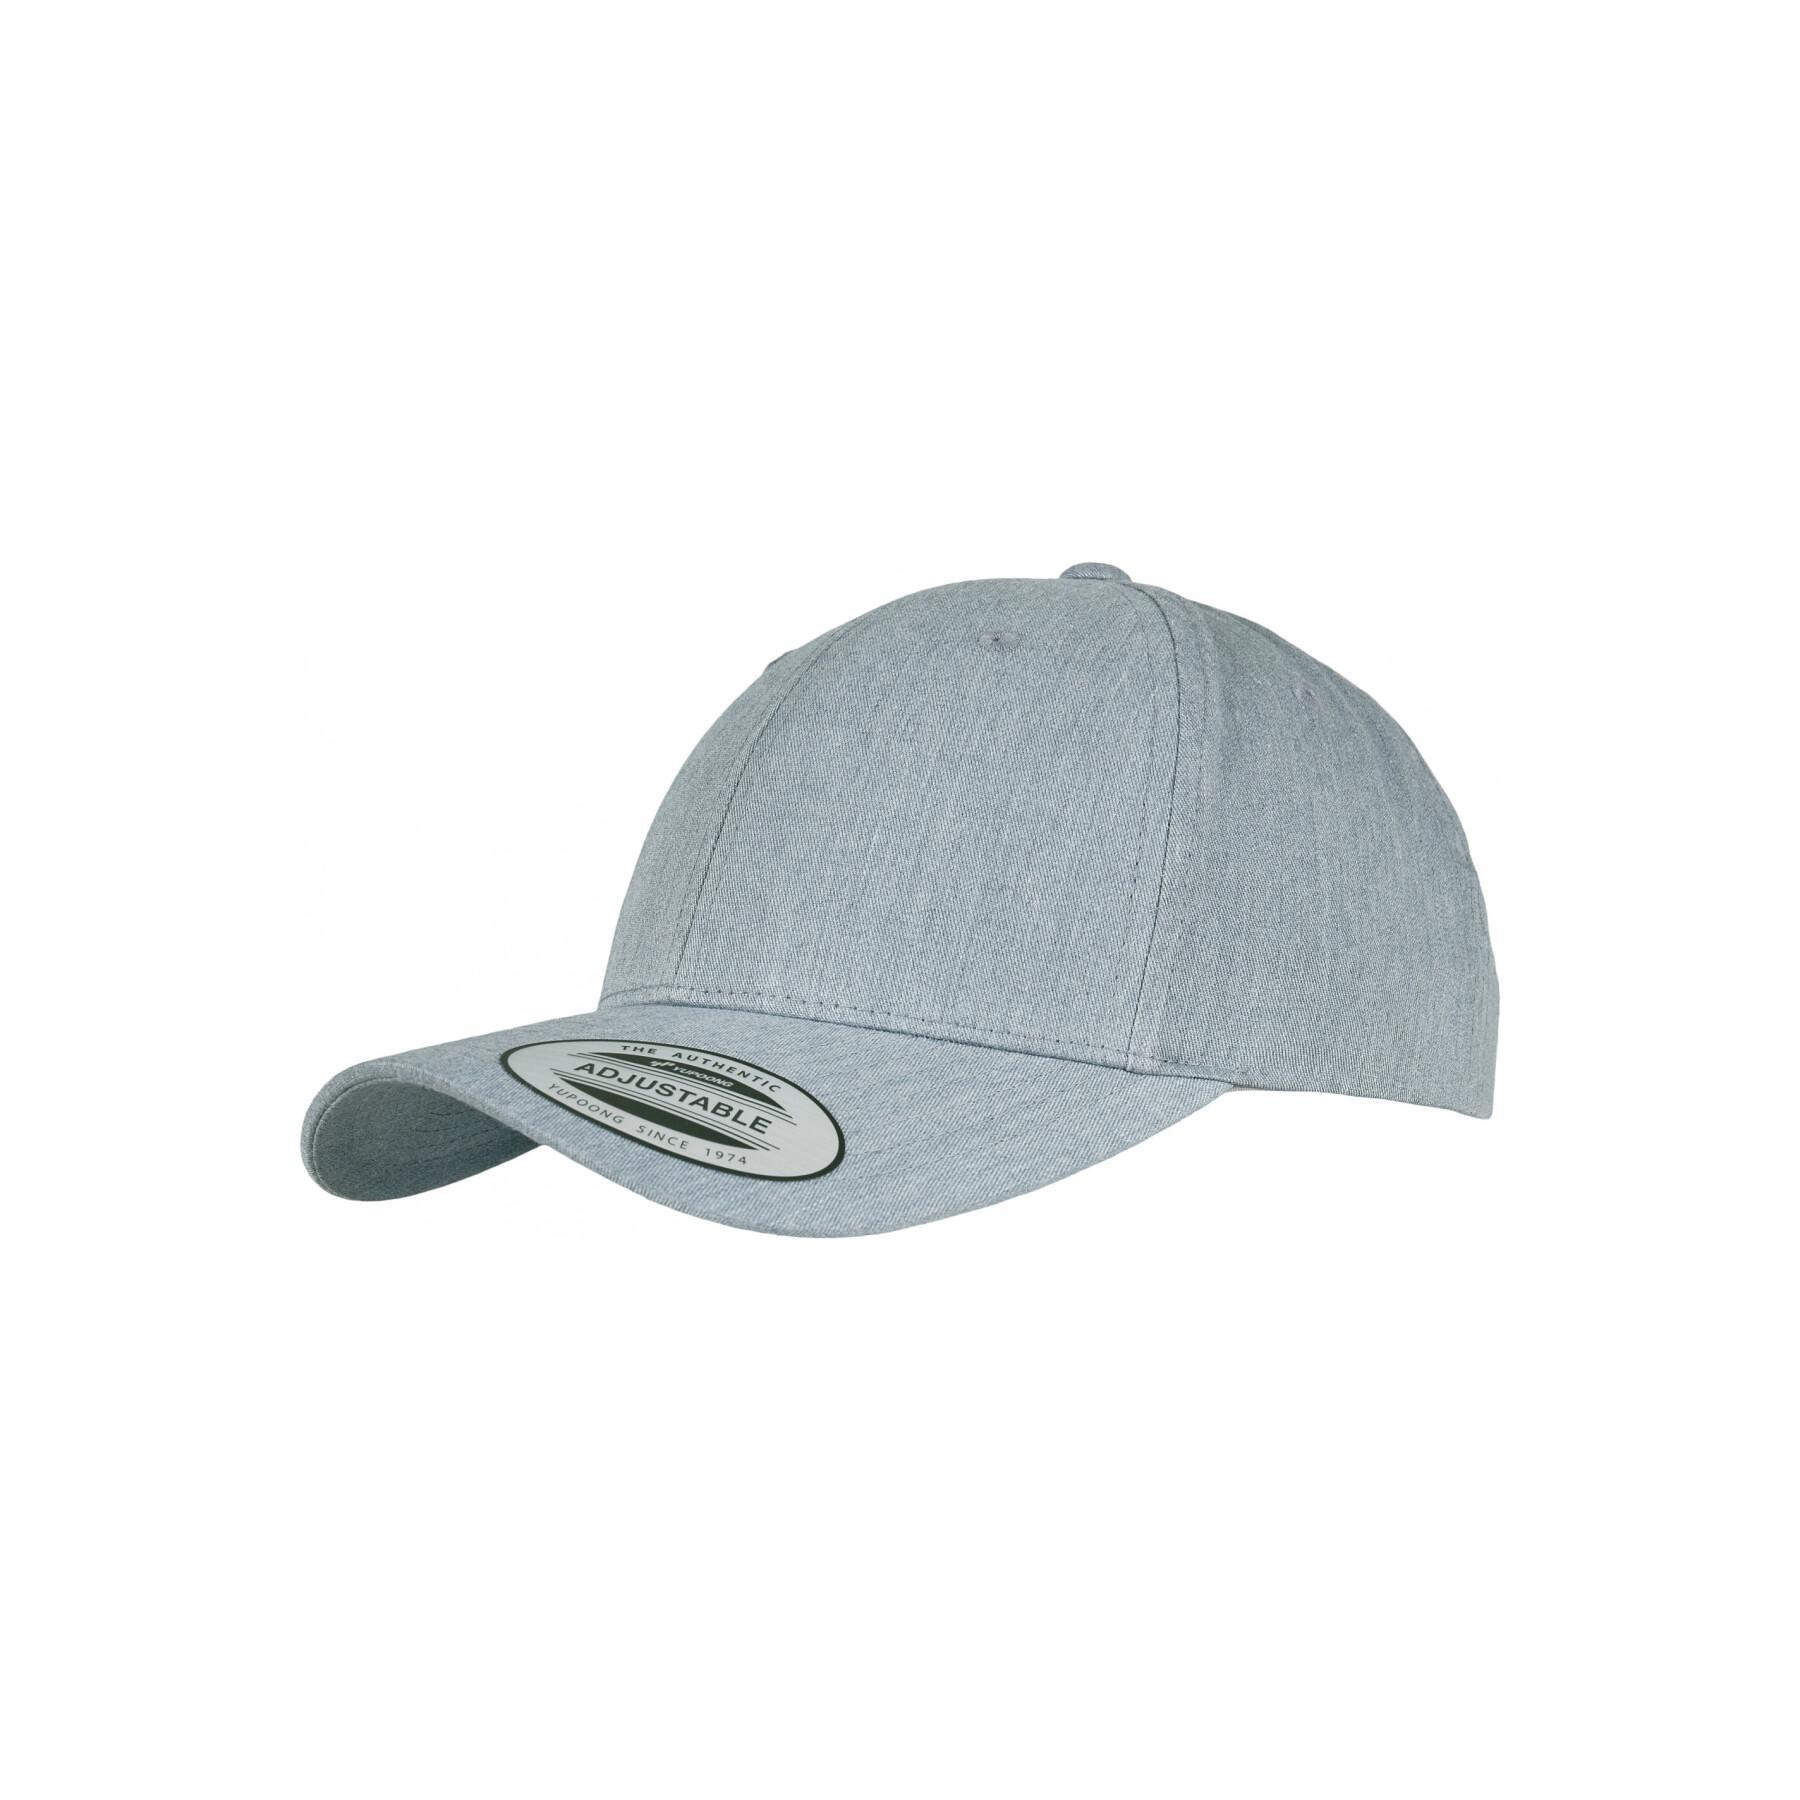 Classic curved cap Flexfit - Baseball caps - Headwear - Accessories